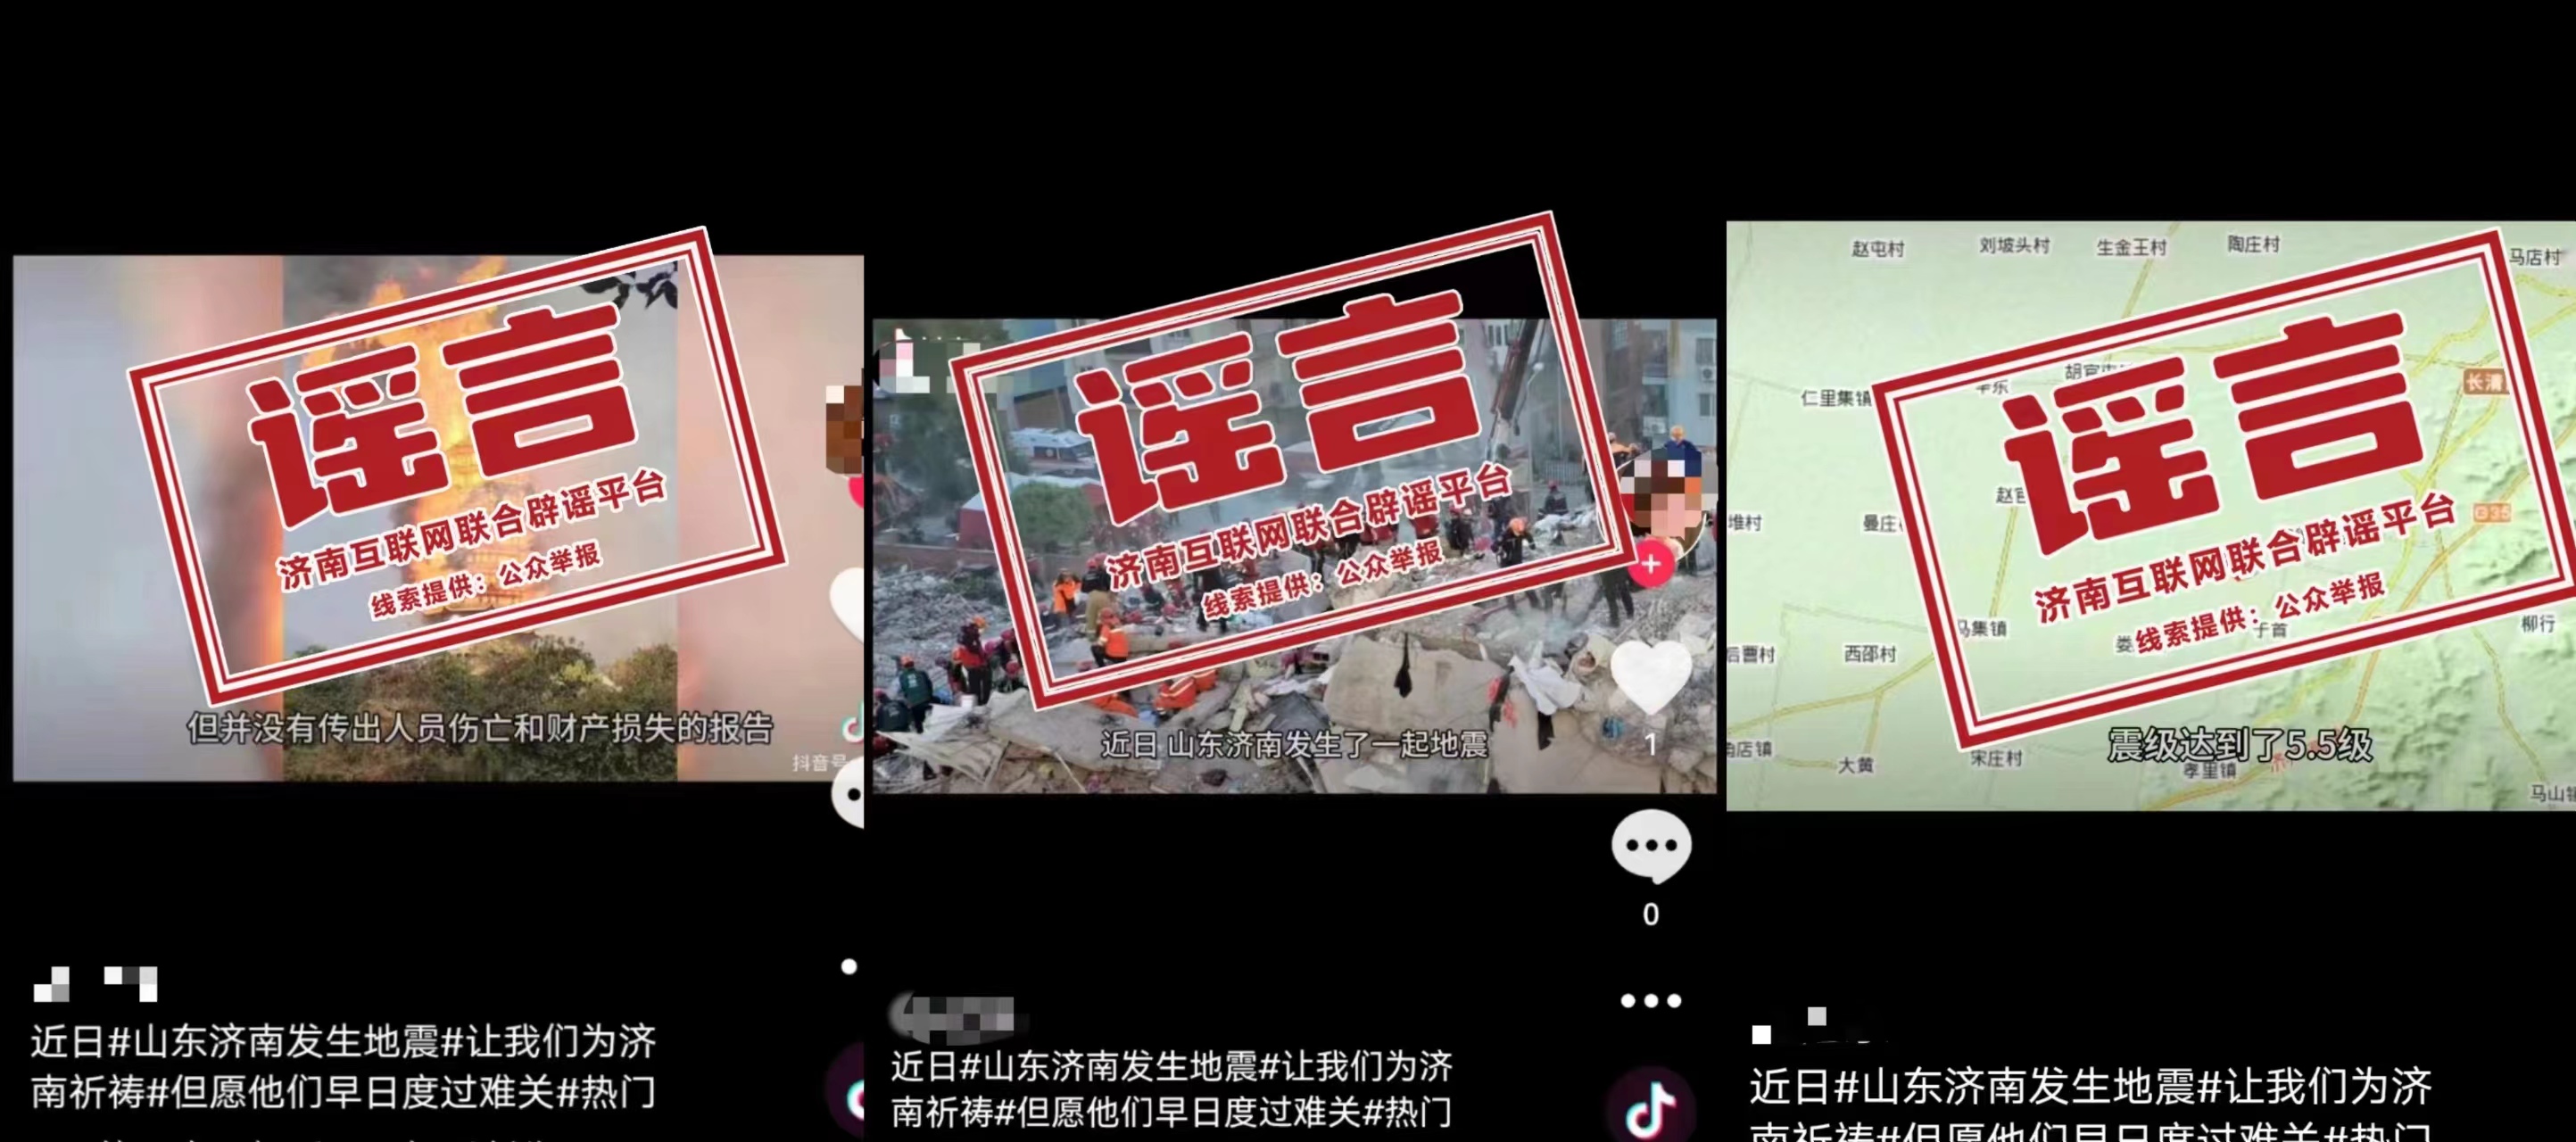 发布谣言的社交平台账号内容 图源
：中国互联网联合辟谣平台